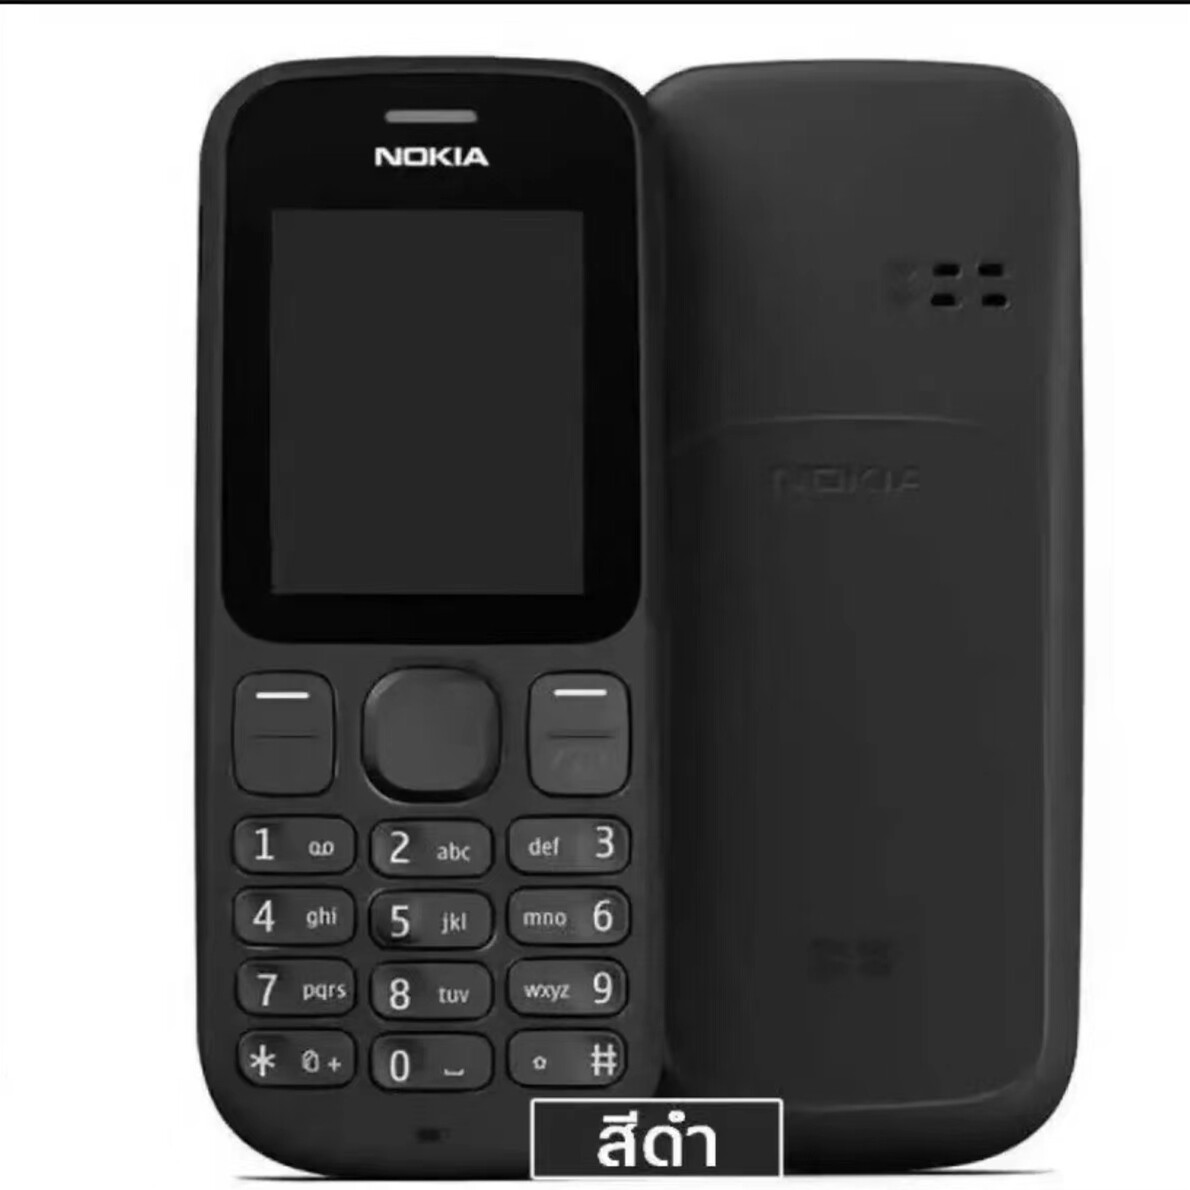 รายละเอียดเพิ่มเติมเกี่ยวกับ โทรศัพท์รุ่น Nokia 101 ส่งฟรีตามเงื่อนไขร้านขายของโทรศัพท์มือถือรุ่นปุ่มกด คล้ายซัมซุงฮีโร่